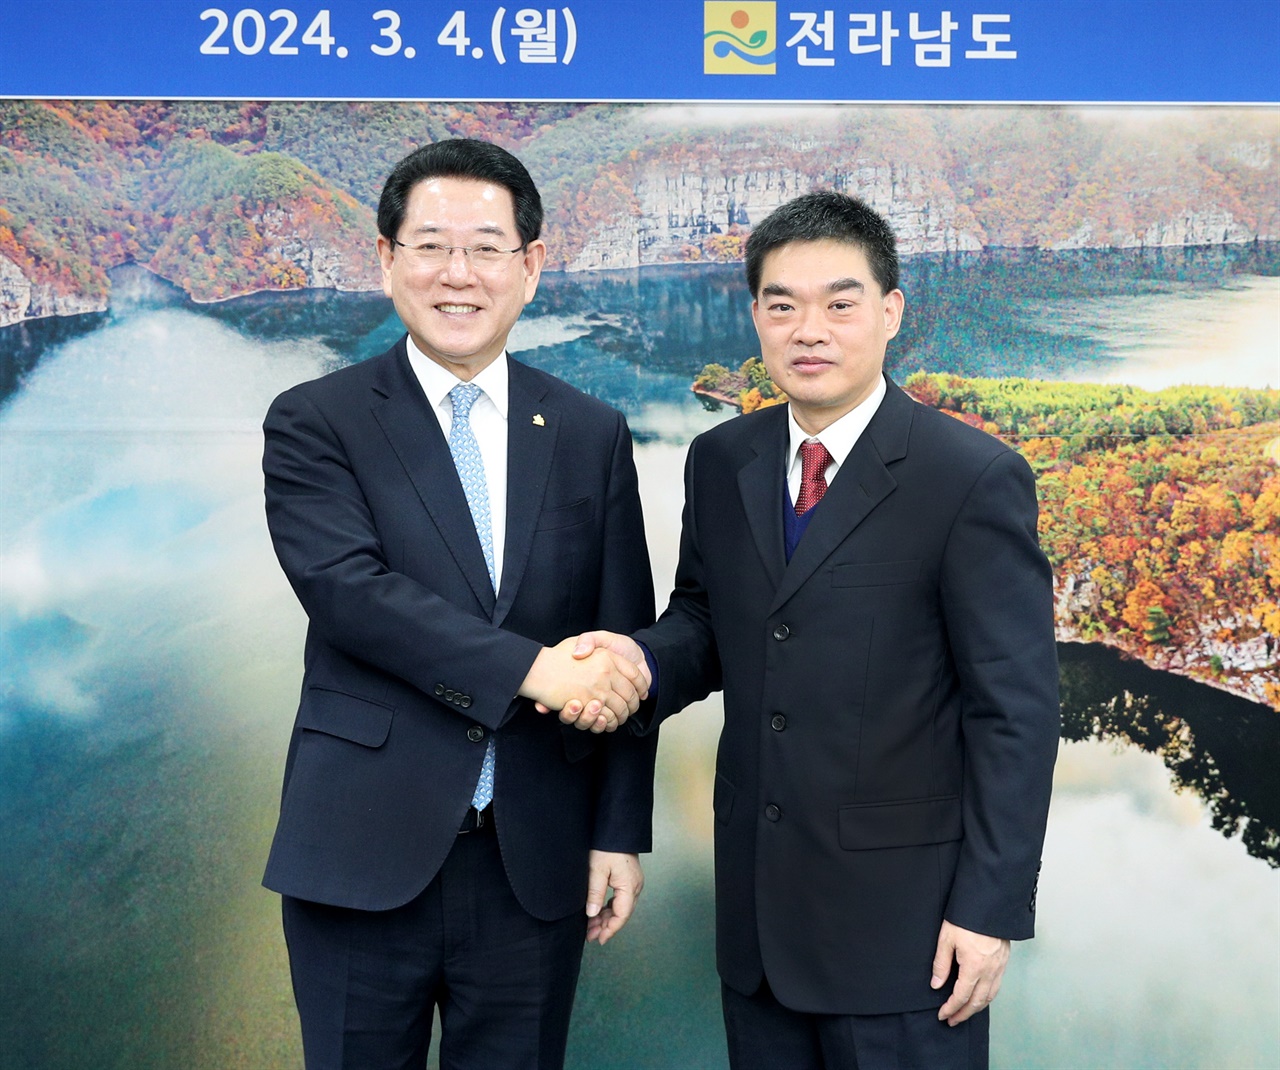 김영록 전남지사(왼쪽)와 꾸징치 신임 주광주중국총영사